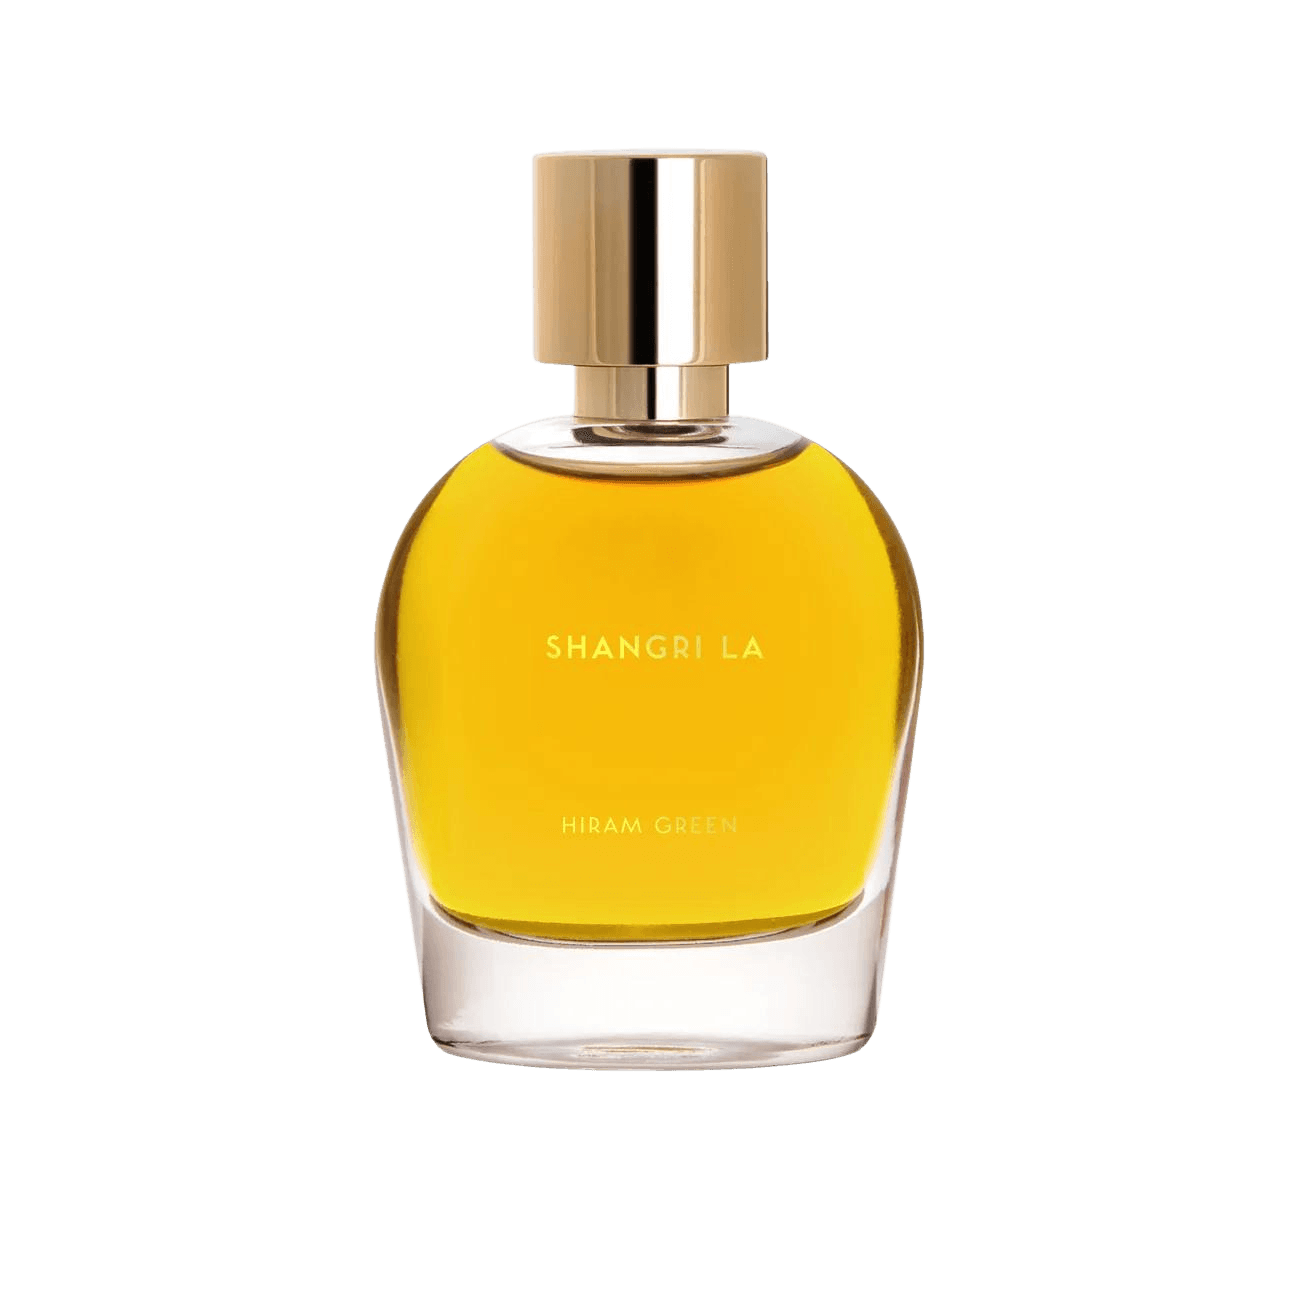 Hiram Green - Shangri La 50 ml eau de parfum | Perfume Lounge